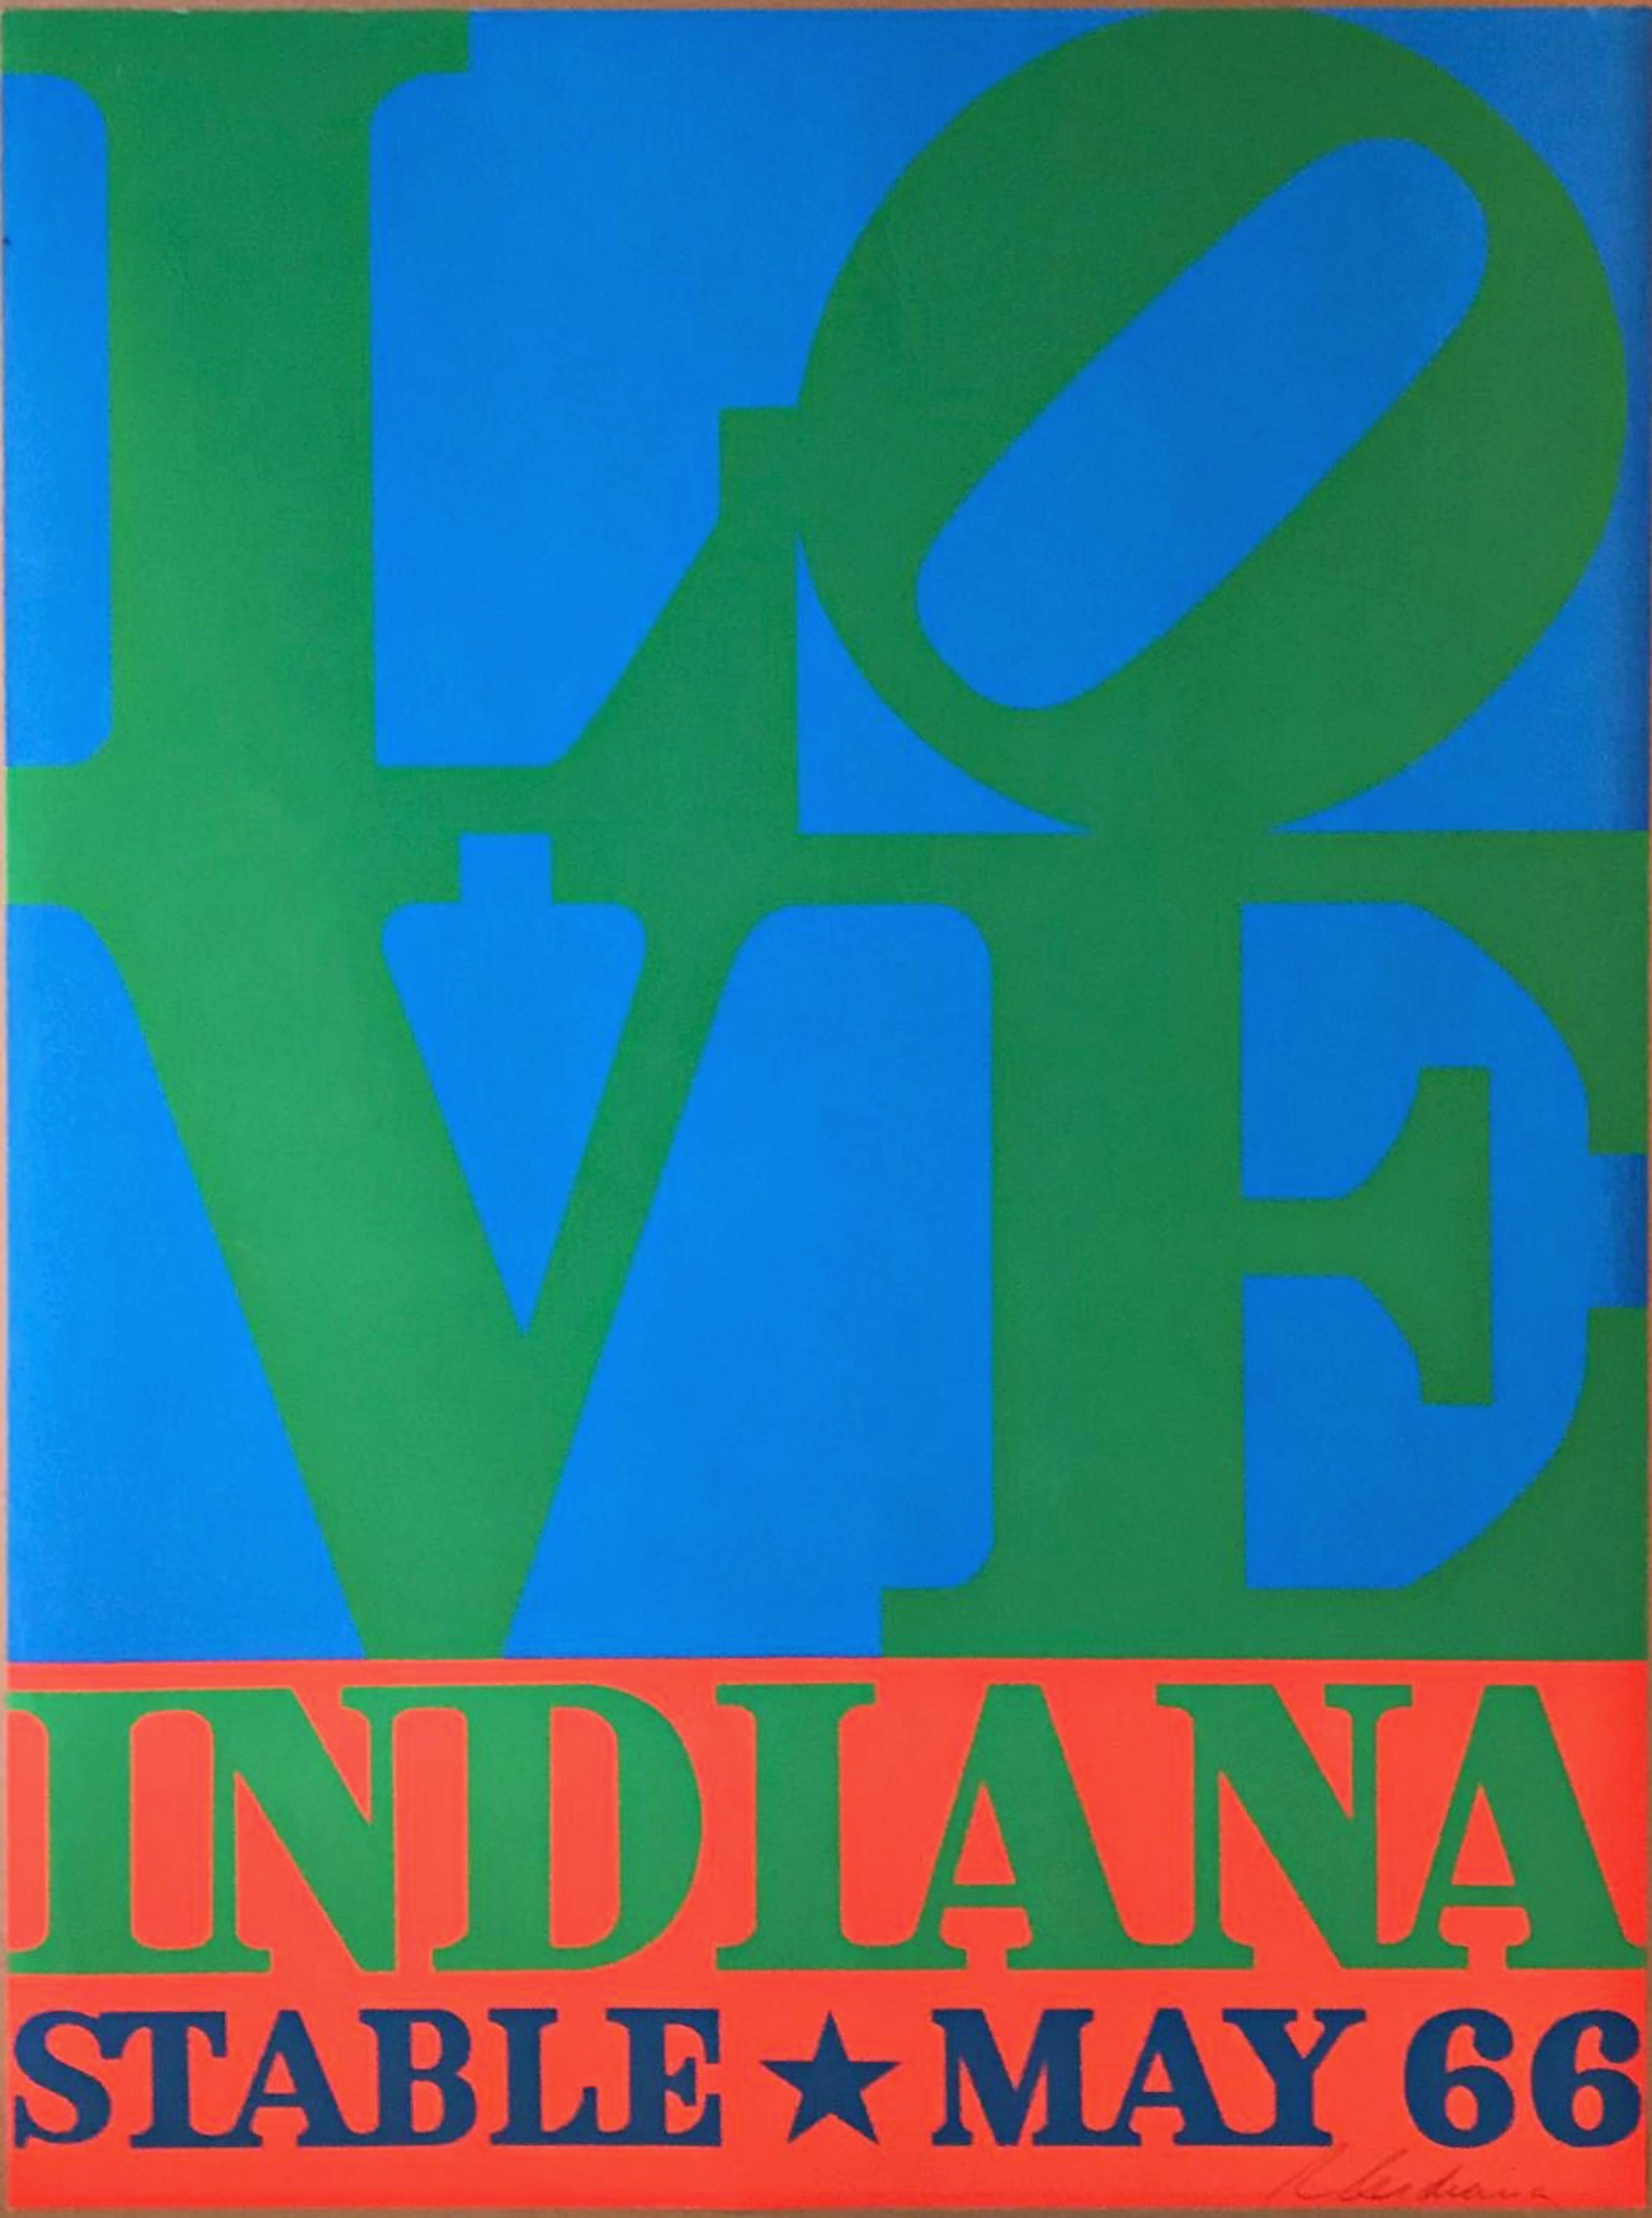 Robert Indiana
LOVE, Stable Gallery (a) Gallery (signé à la main), 1966
Sérigraphie sur papier vélin. Signé par Robert Indiana
33 1/2 × 24 pouces
Signé à la main en bas à droite sur le devant 
Publié par (a) Gallery Gallery
Non encadré
Il s'agit de